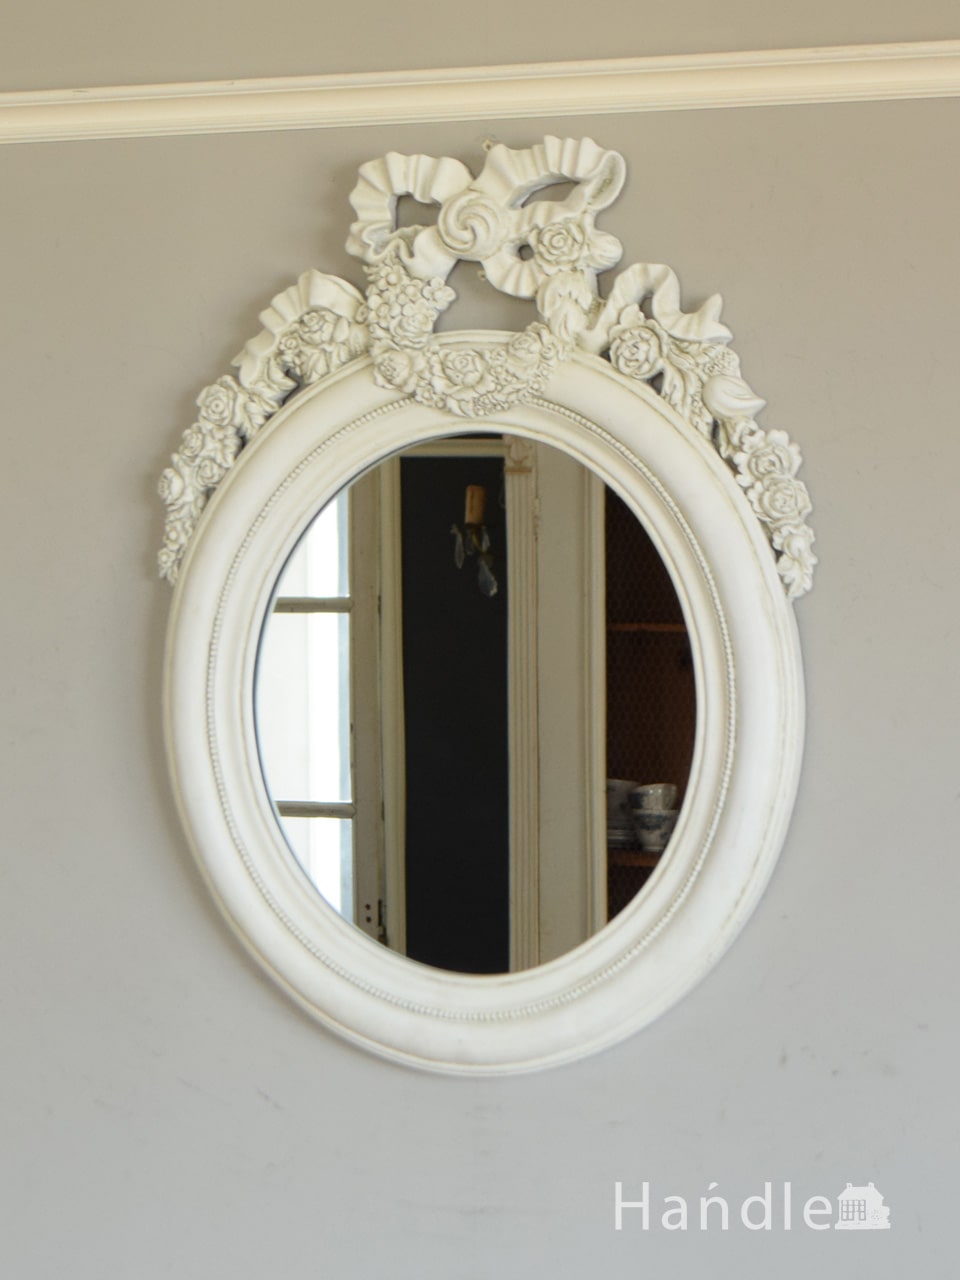 アンティーク調のおしゃれな鏡、大きなリボン付きのウォールミラー